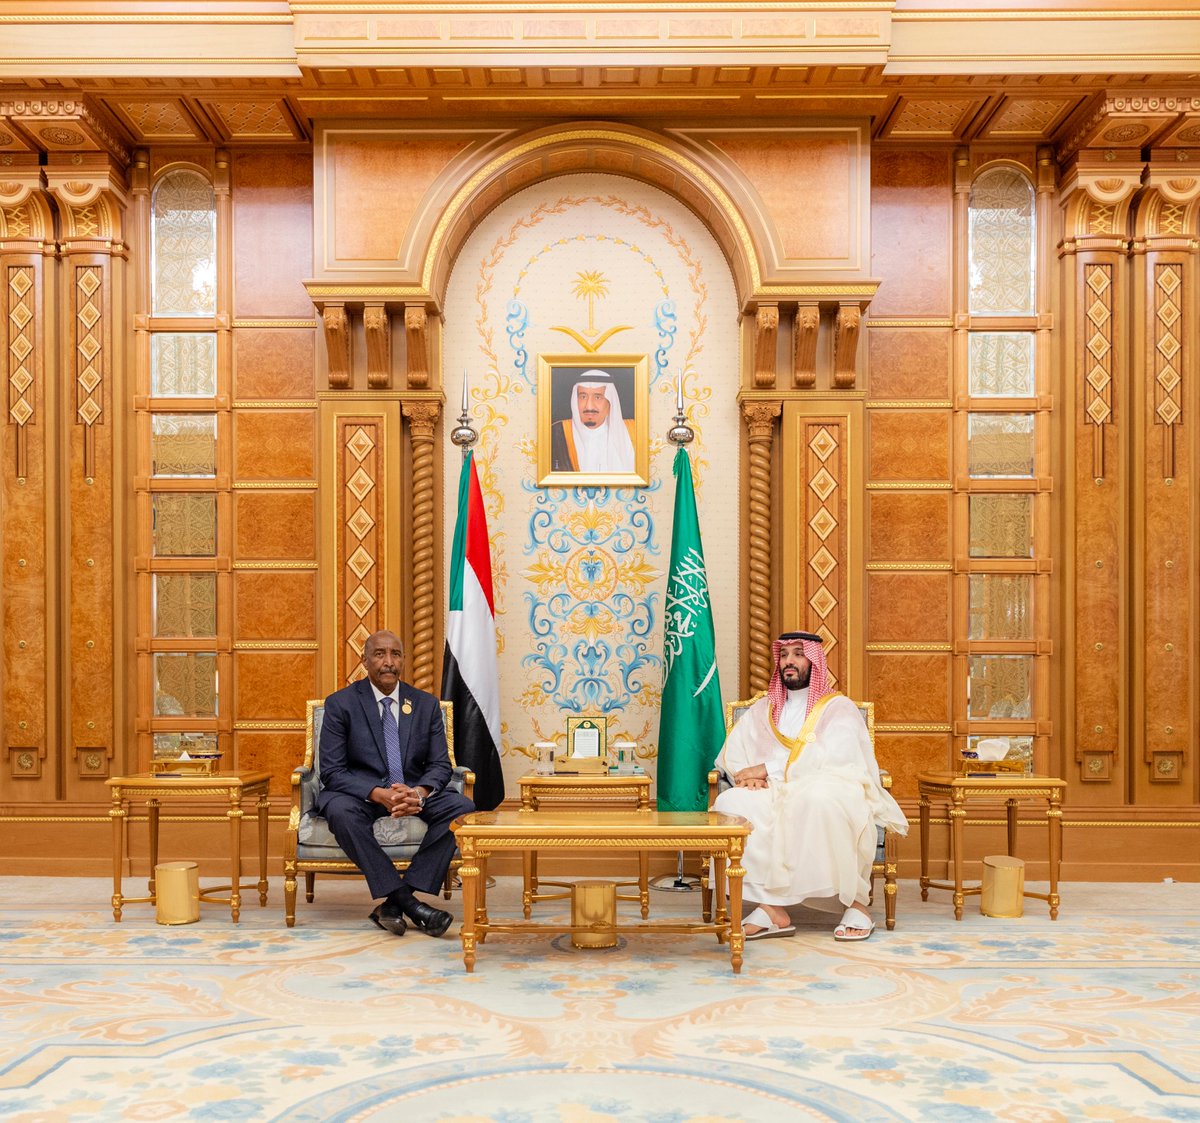 سمو #ولي_العهد يلتقي رئيس مجلس السيادة الانتقالي بجمهورية السودان وذلك على هامش انعقاد #القمة_السعودية_الأفريقية. #واس